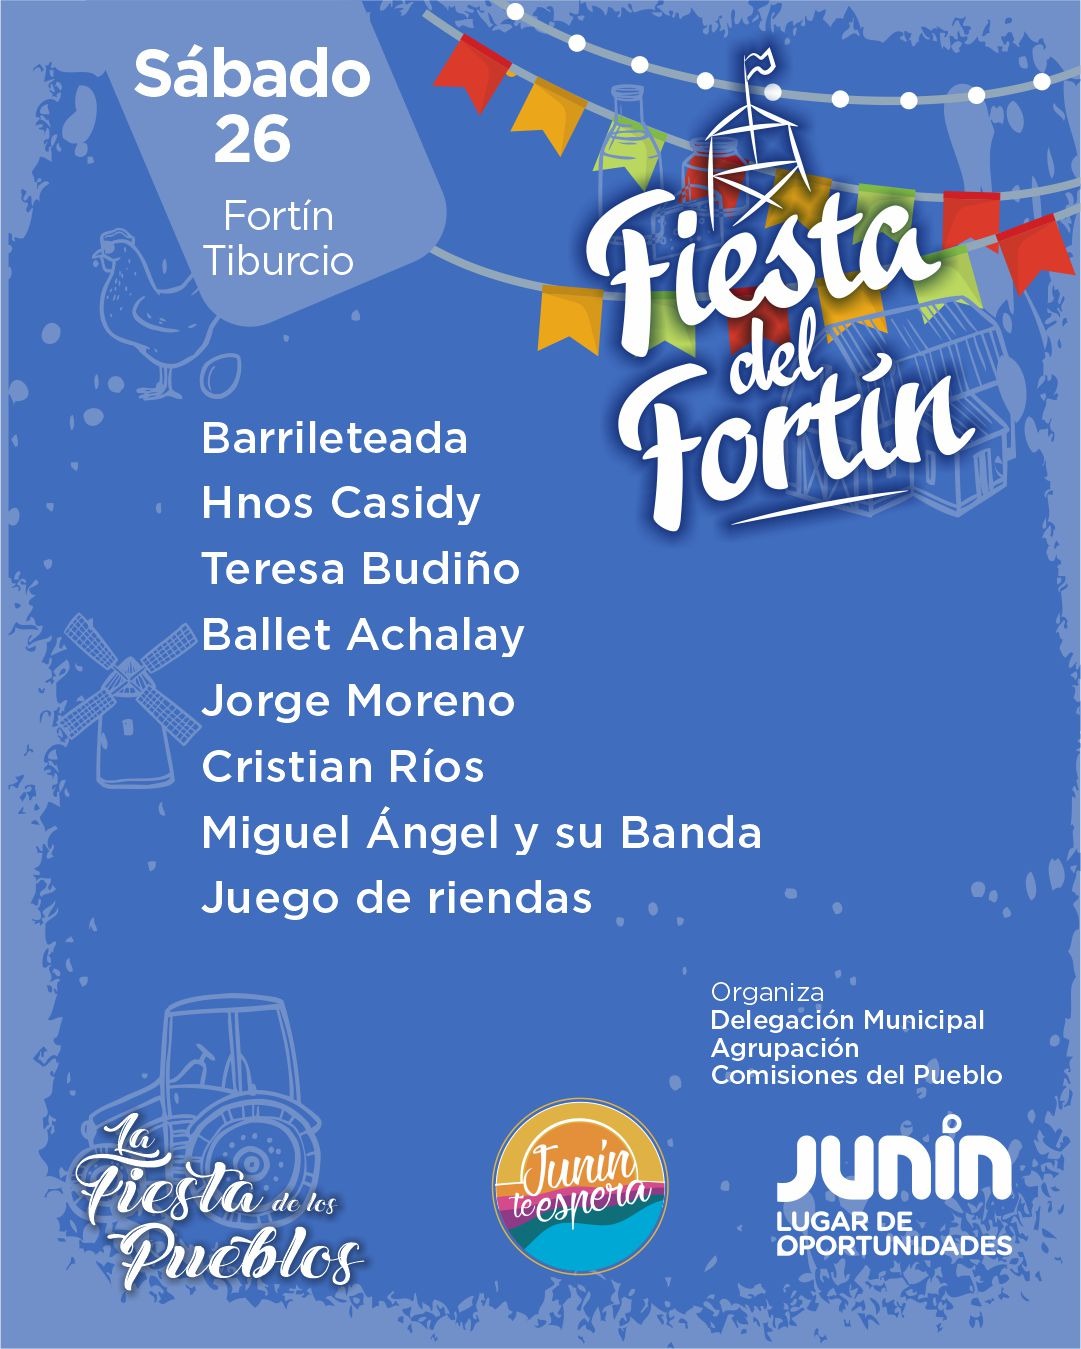 Tiburcio celebra una nueva “Fiesta del Fortín” este 26 y 27 de agosto